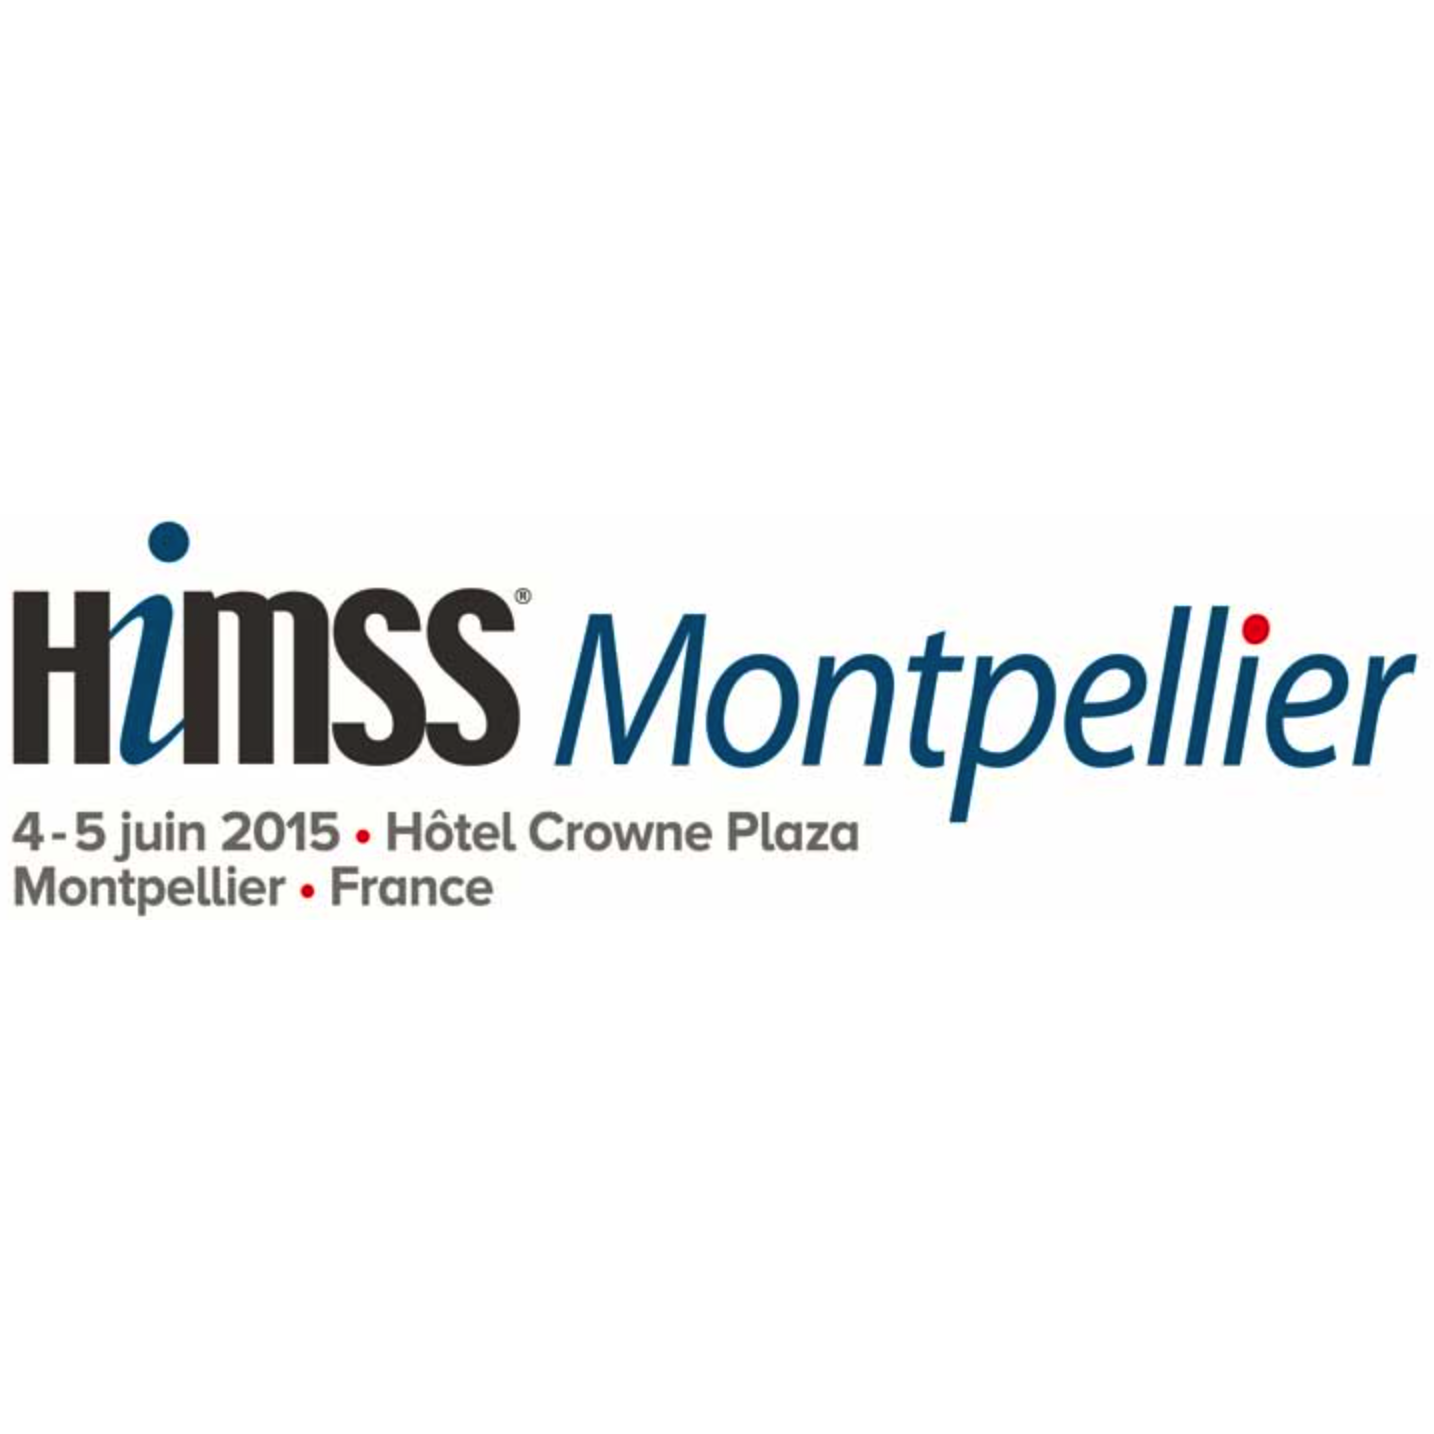 HIMSS Europe et le CHRU de Montpellier s’associent - RDV les 4 et 5 juin 2015 !